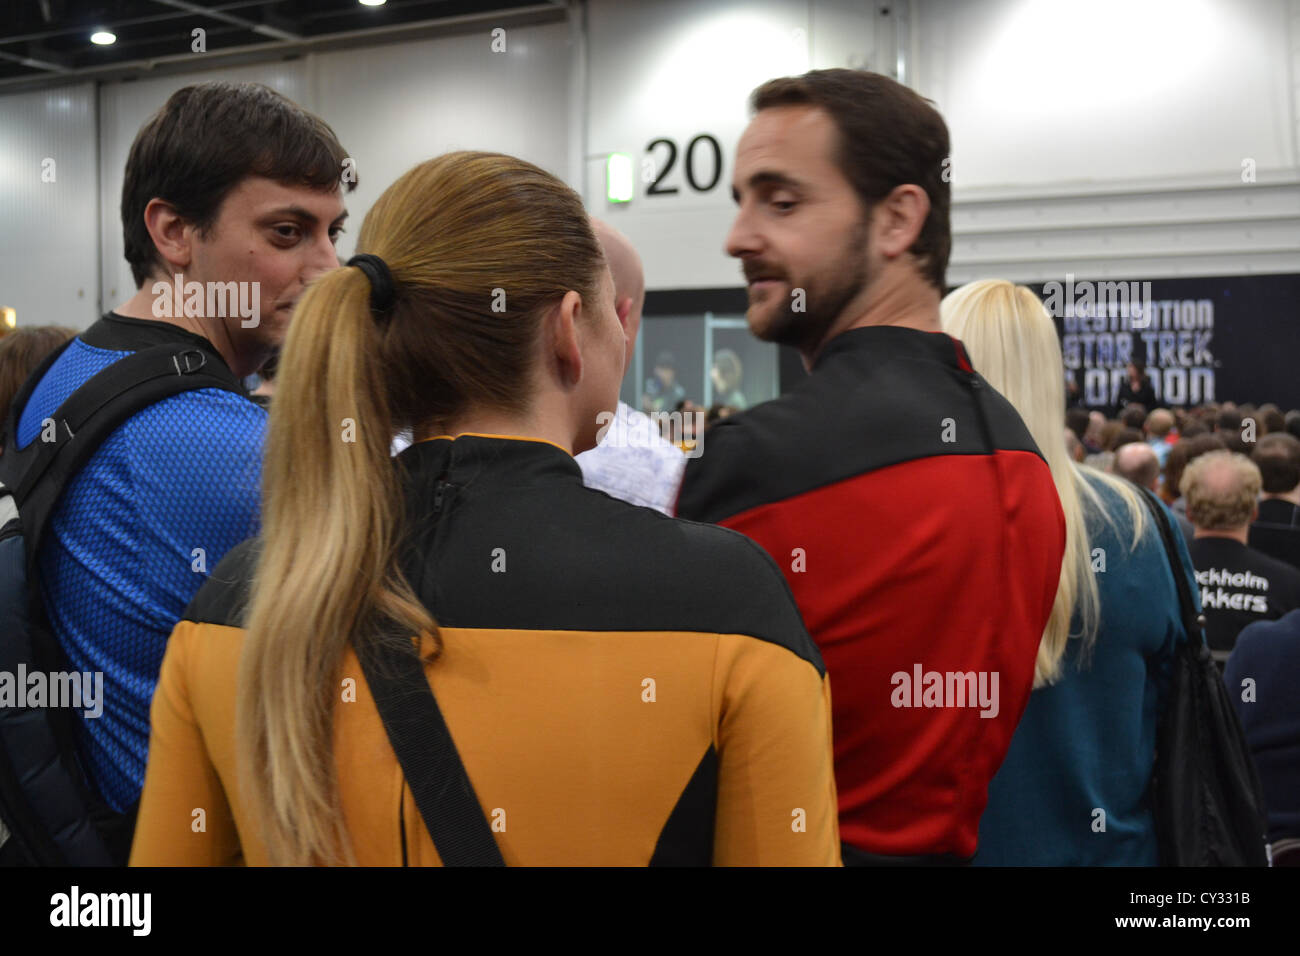 Star Trek-Fans gerade einen Vortrag auf der Star Trek Convention, London. Stockfoto